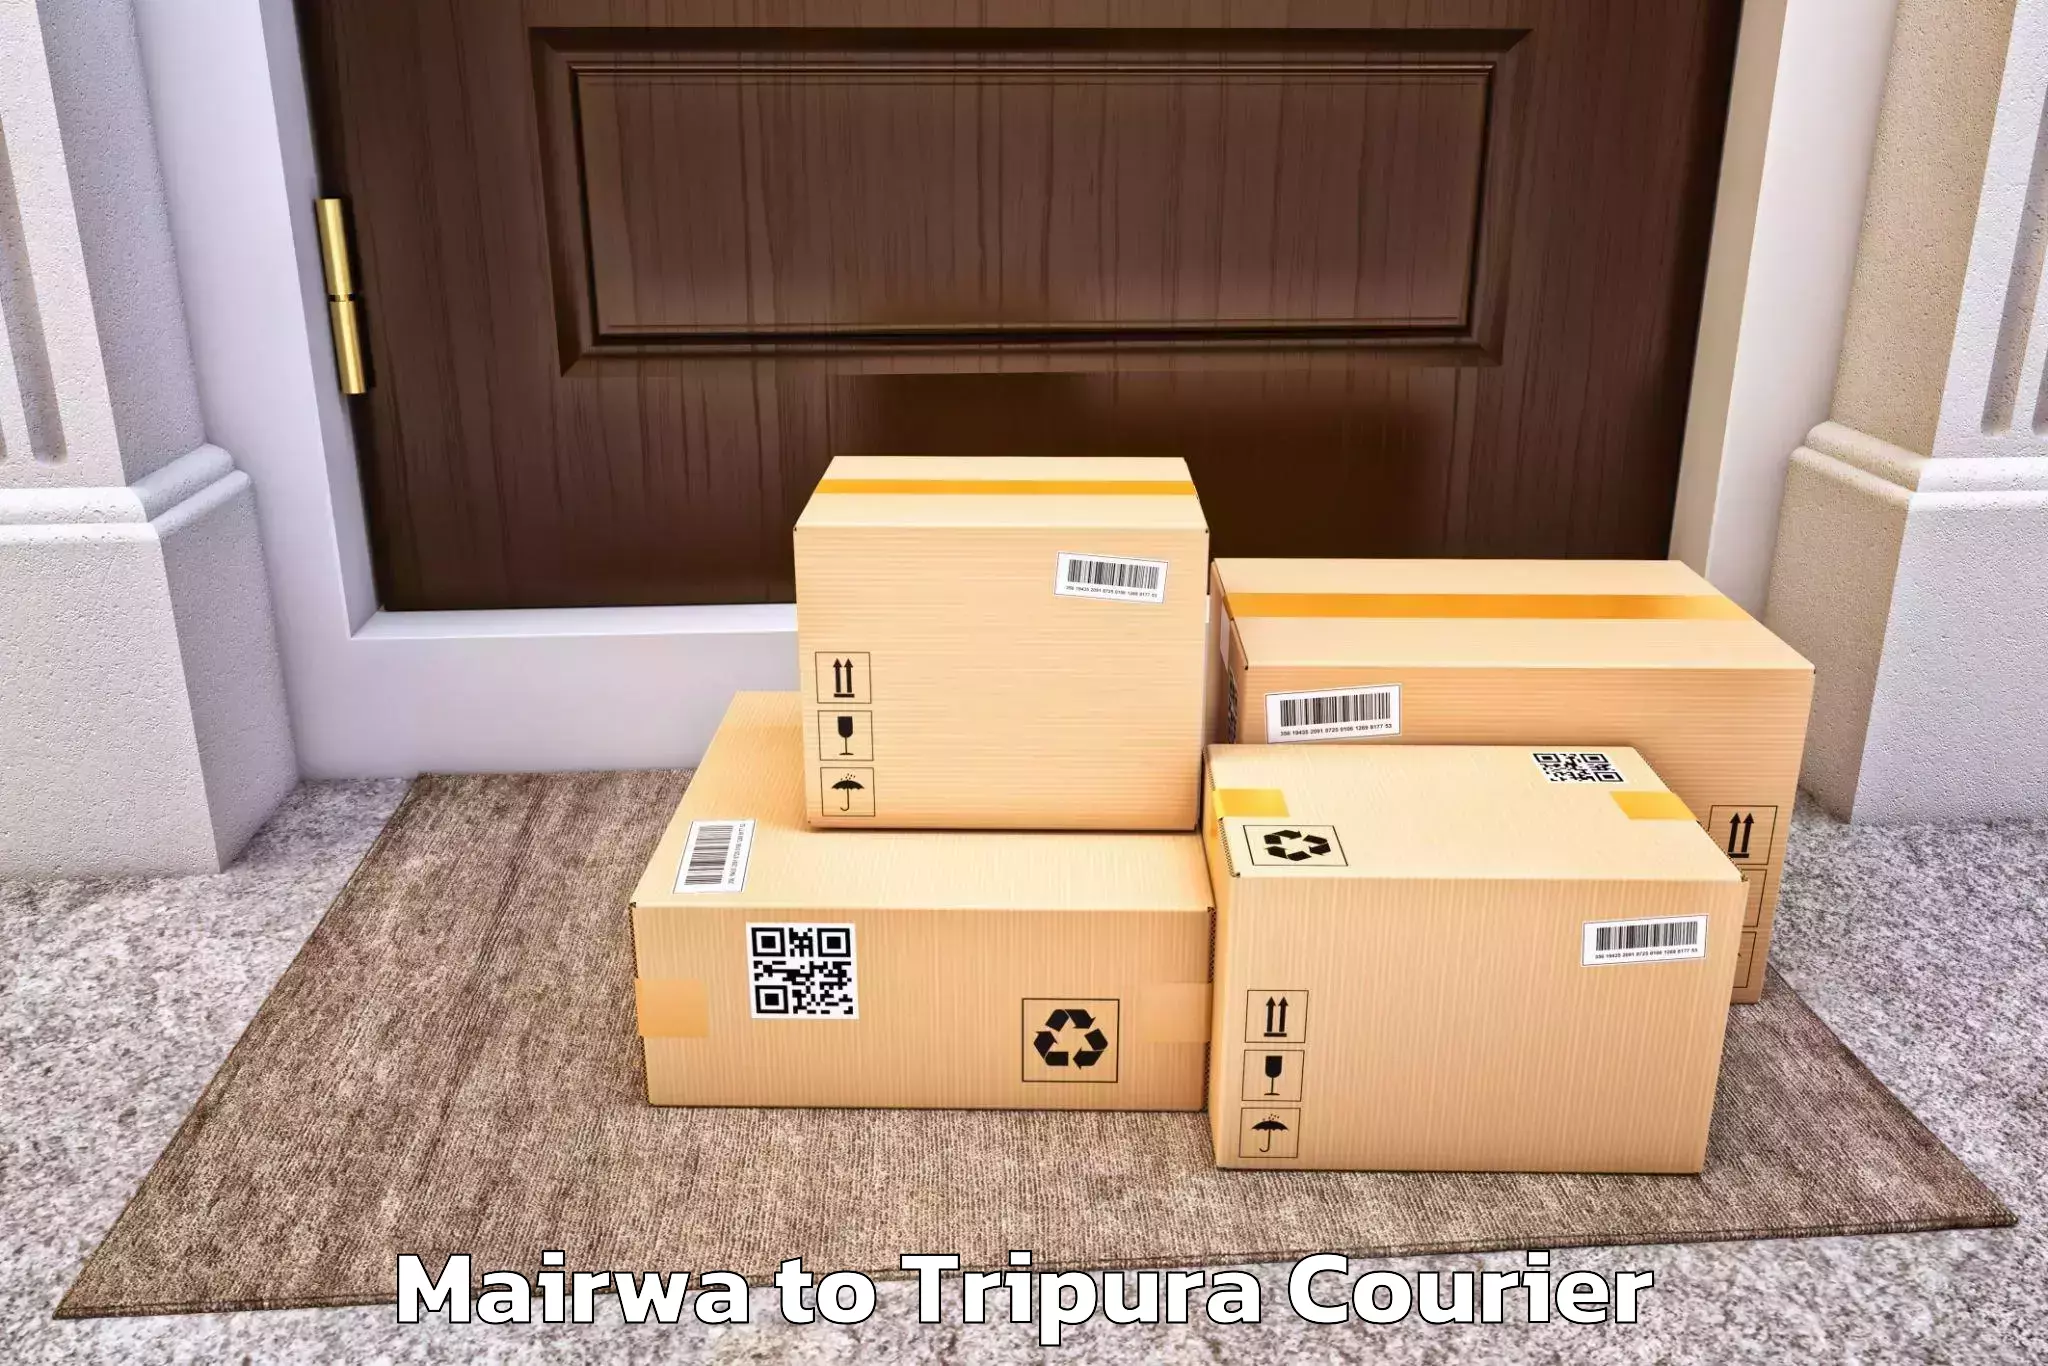 Full-service movers Mairwa to Tripura